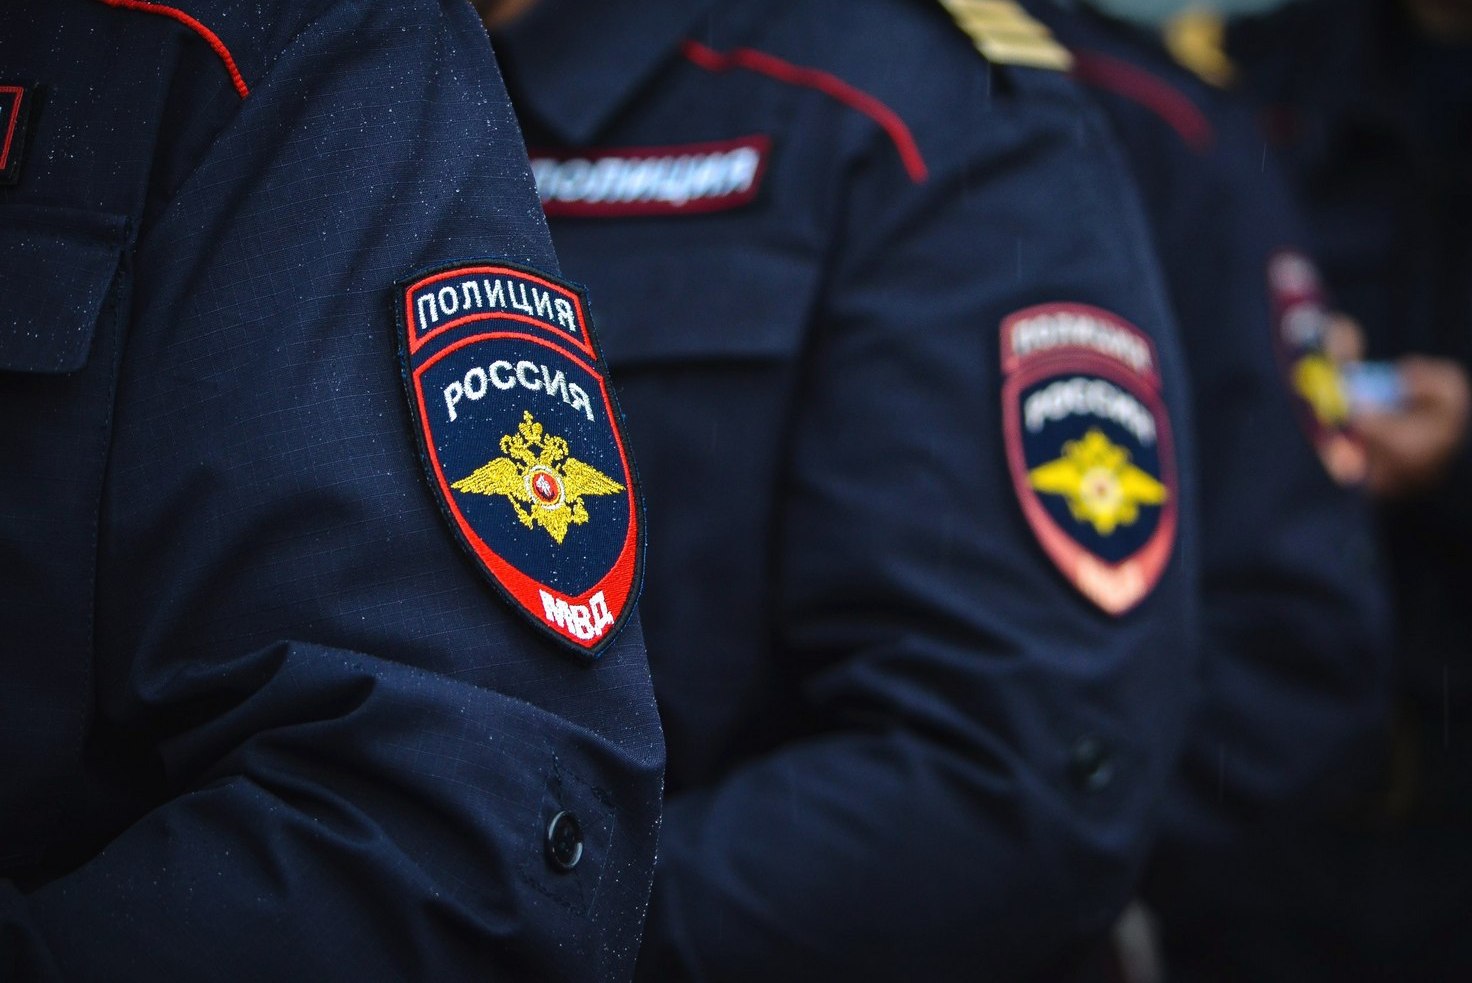 Обстреляли человека за обычное замечание: как "развлекались" московские полицейские после работы